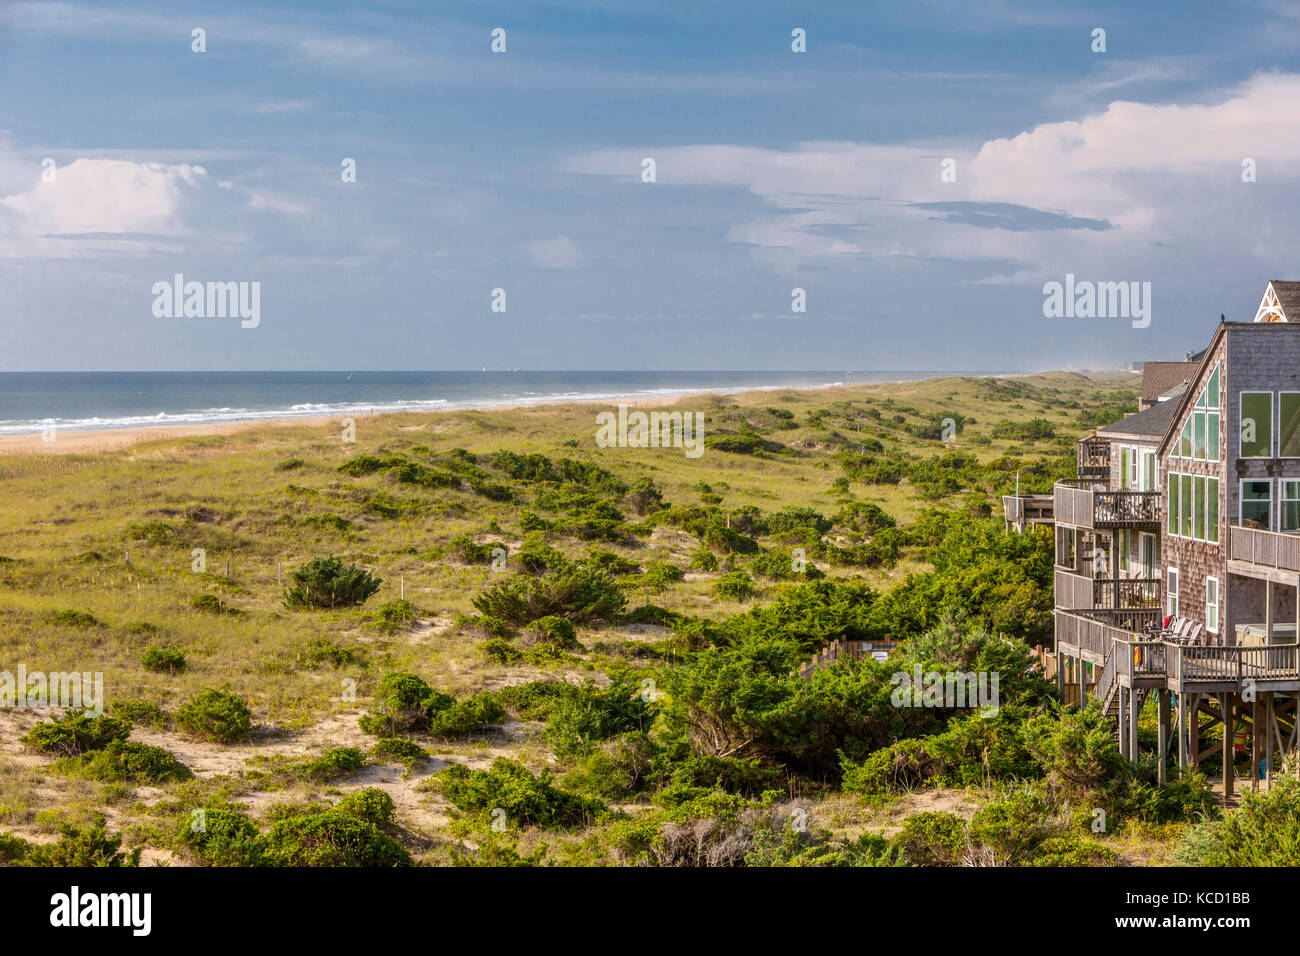 Avon, Outer Banks, Caroline du Nord, USA. Une maison de plage sur une île-barrière, l'océan Atlantique au large de la plage. Banque D'Images